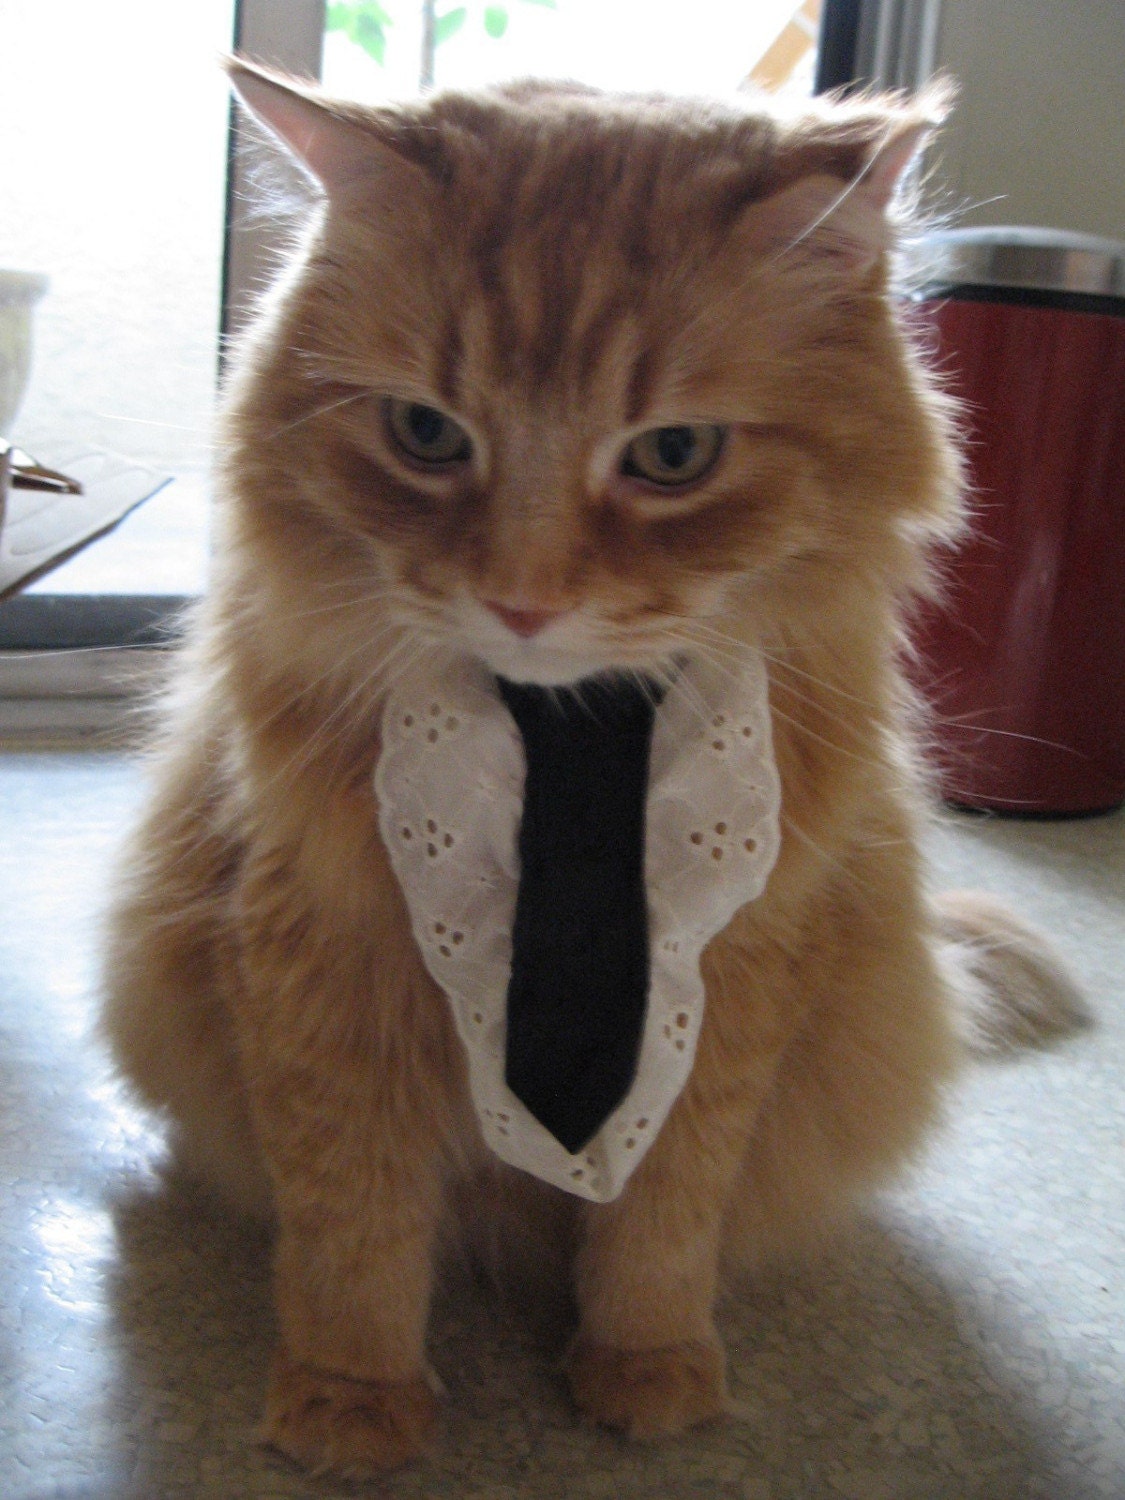 Cat Ties